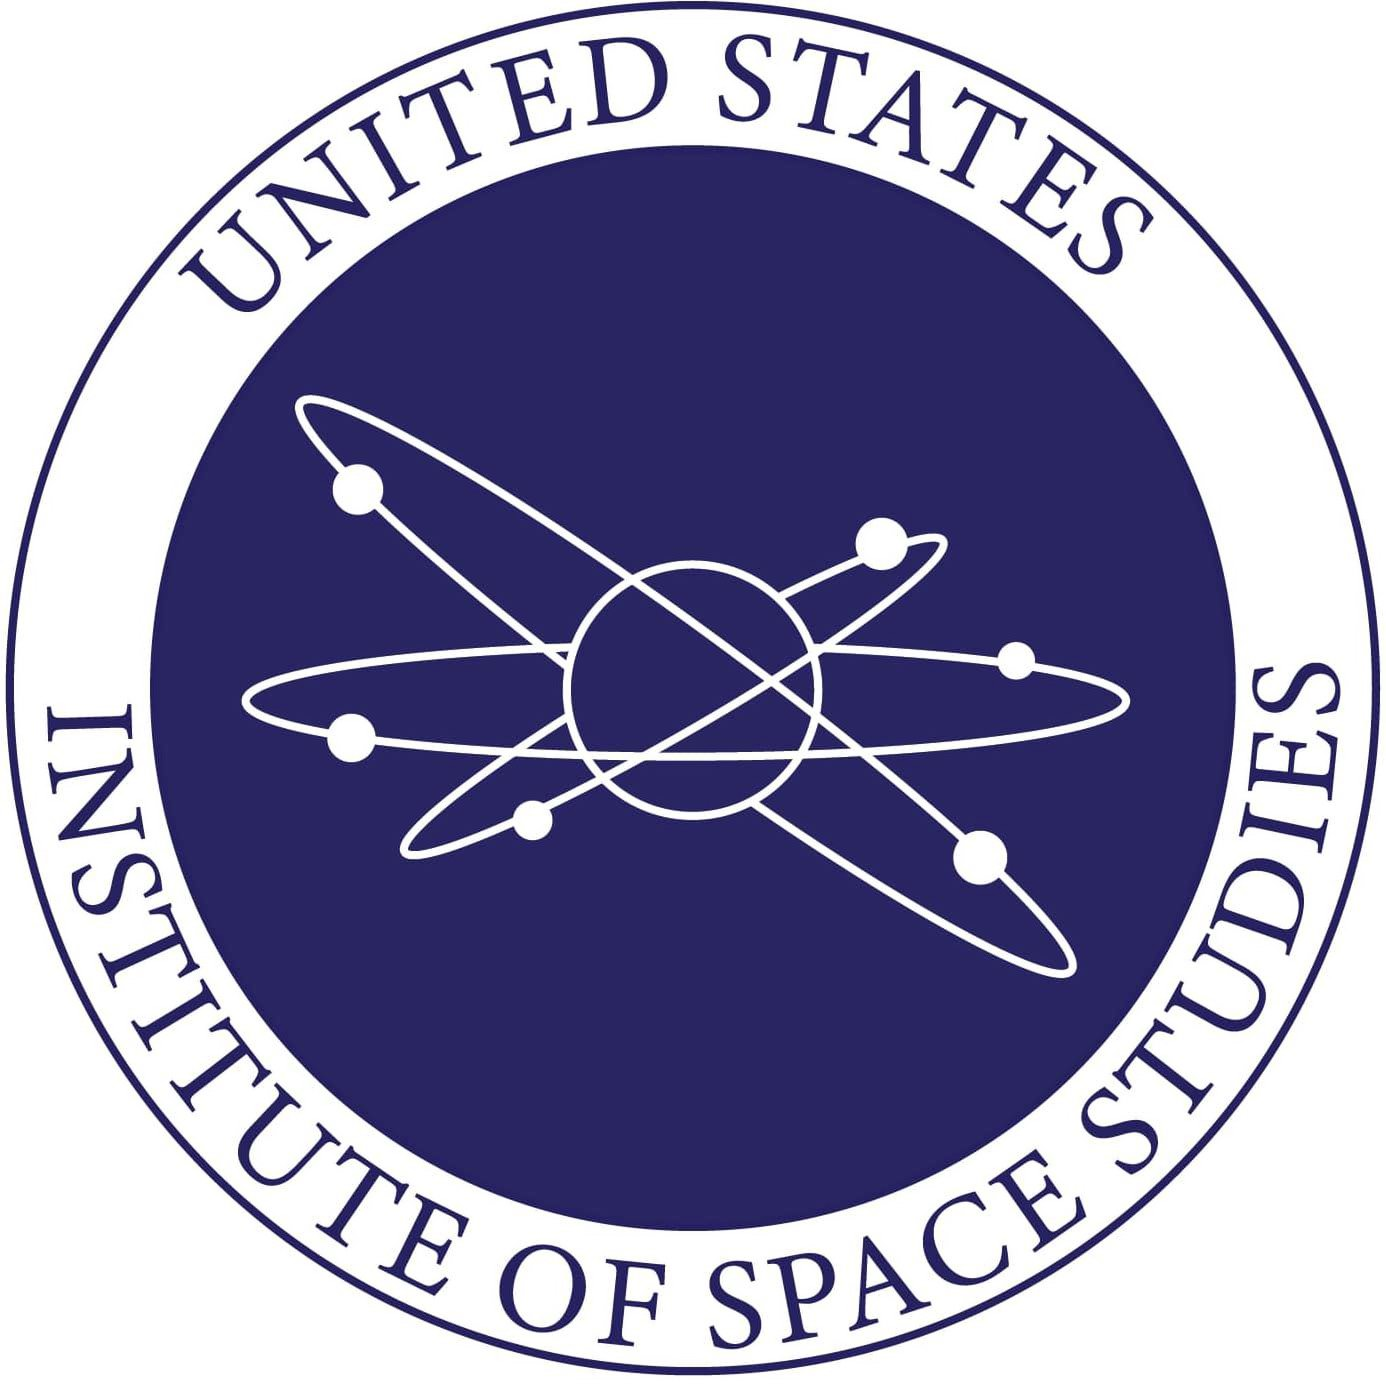  UNITED STATES INSTITUTE OF SPACE STUDIES